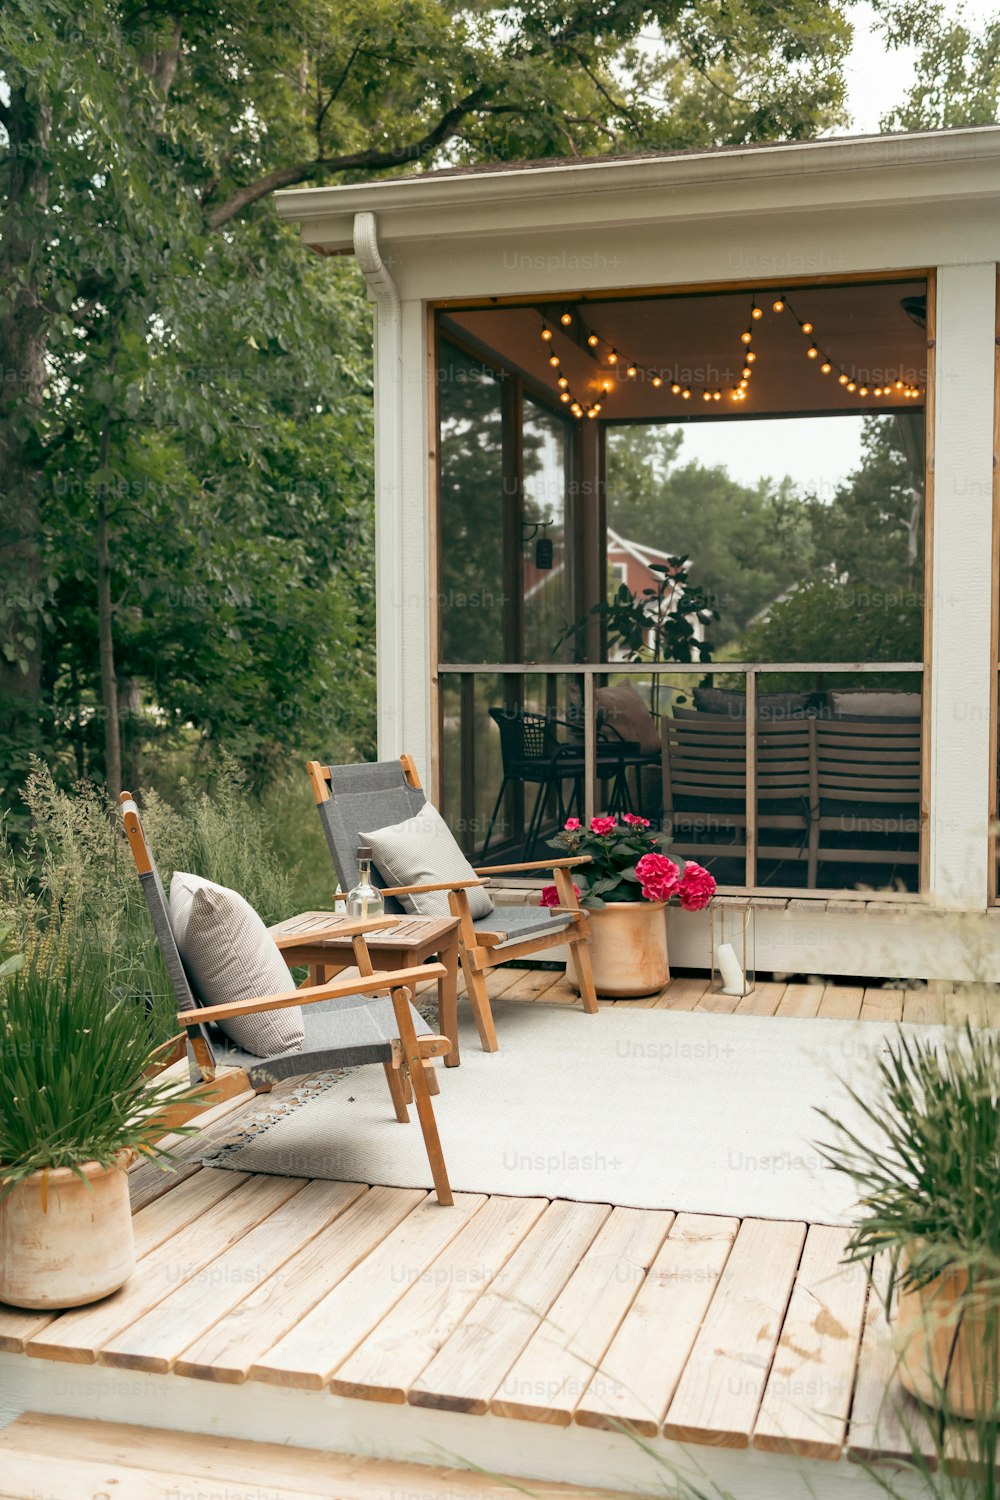 una terraza con sillas y plantas en macetas